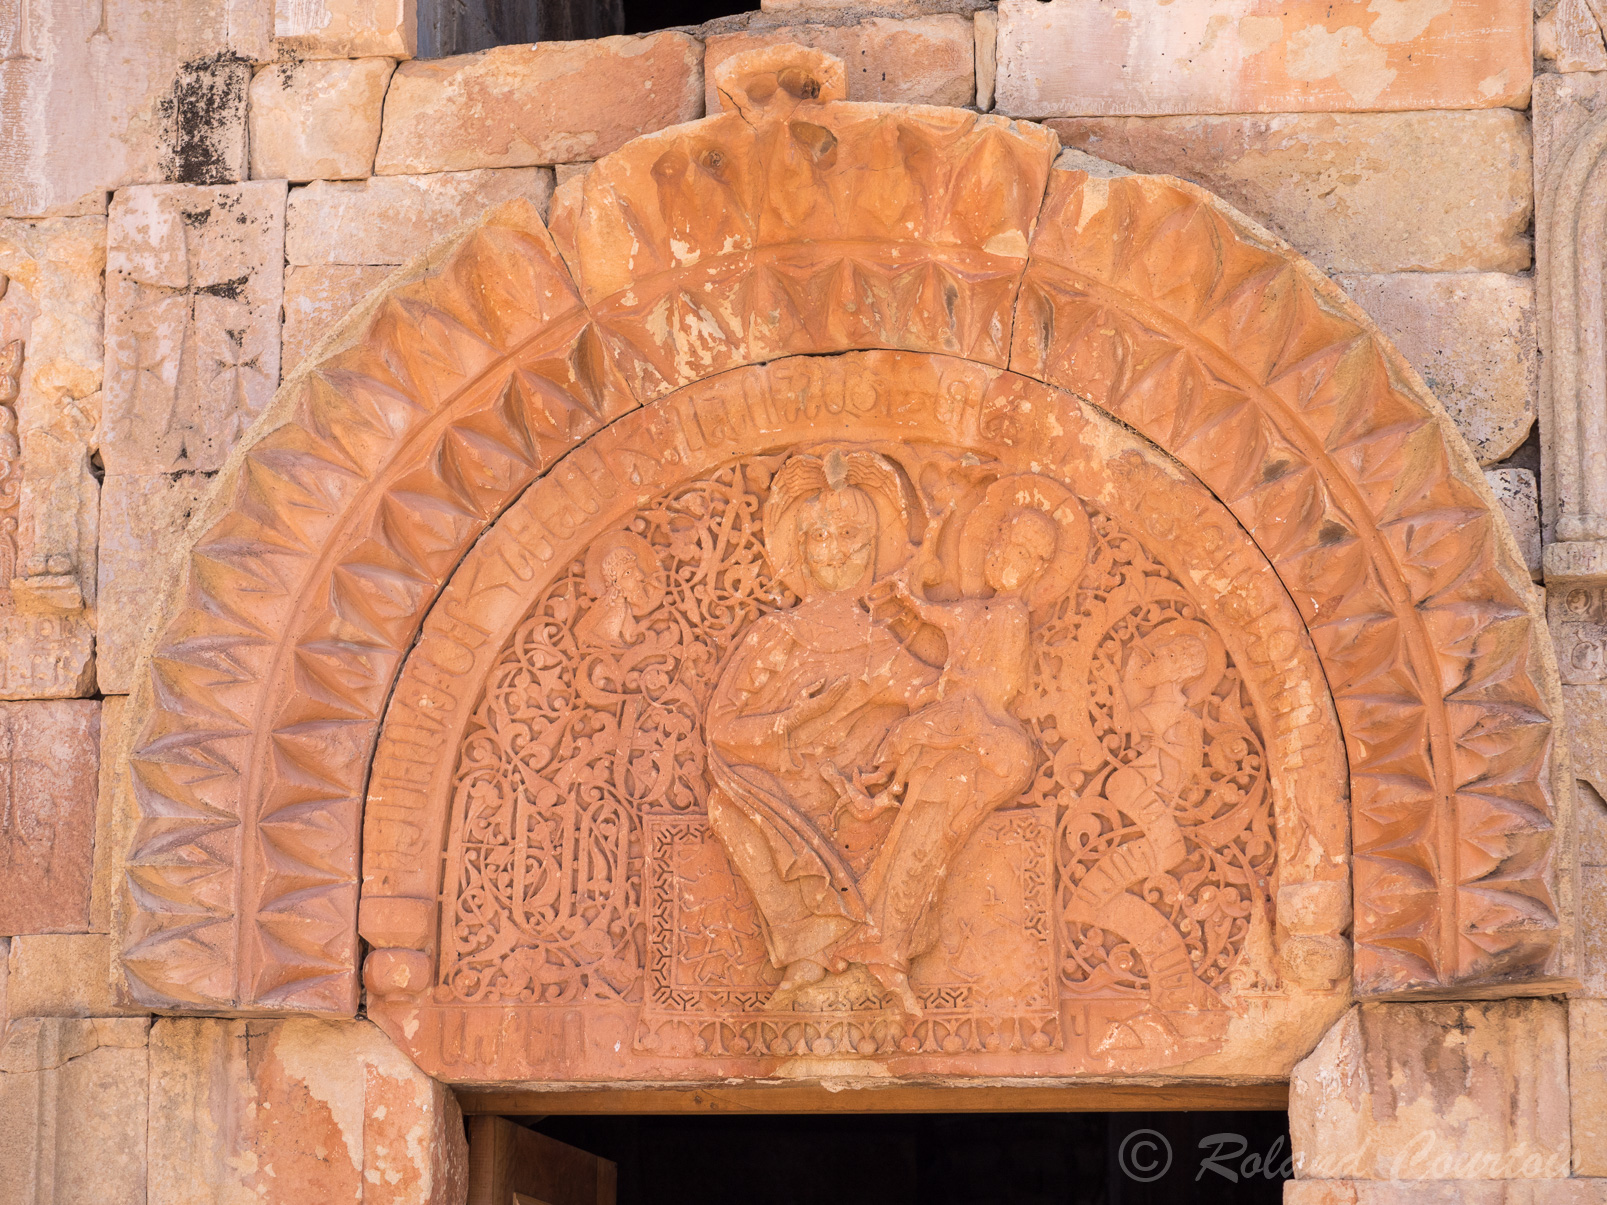 Monastère de Noravank. Eglise de Saint Jean le Précurseur. Le tympan inférieur, semi-circulaire, surmonte la porte du gavit. La Vierge et l'Enfant figurent au centre.